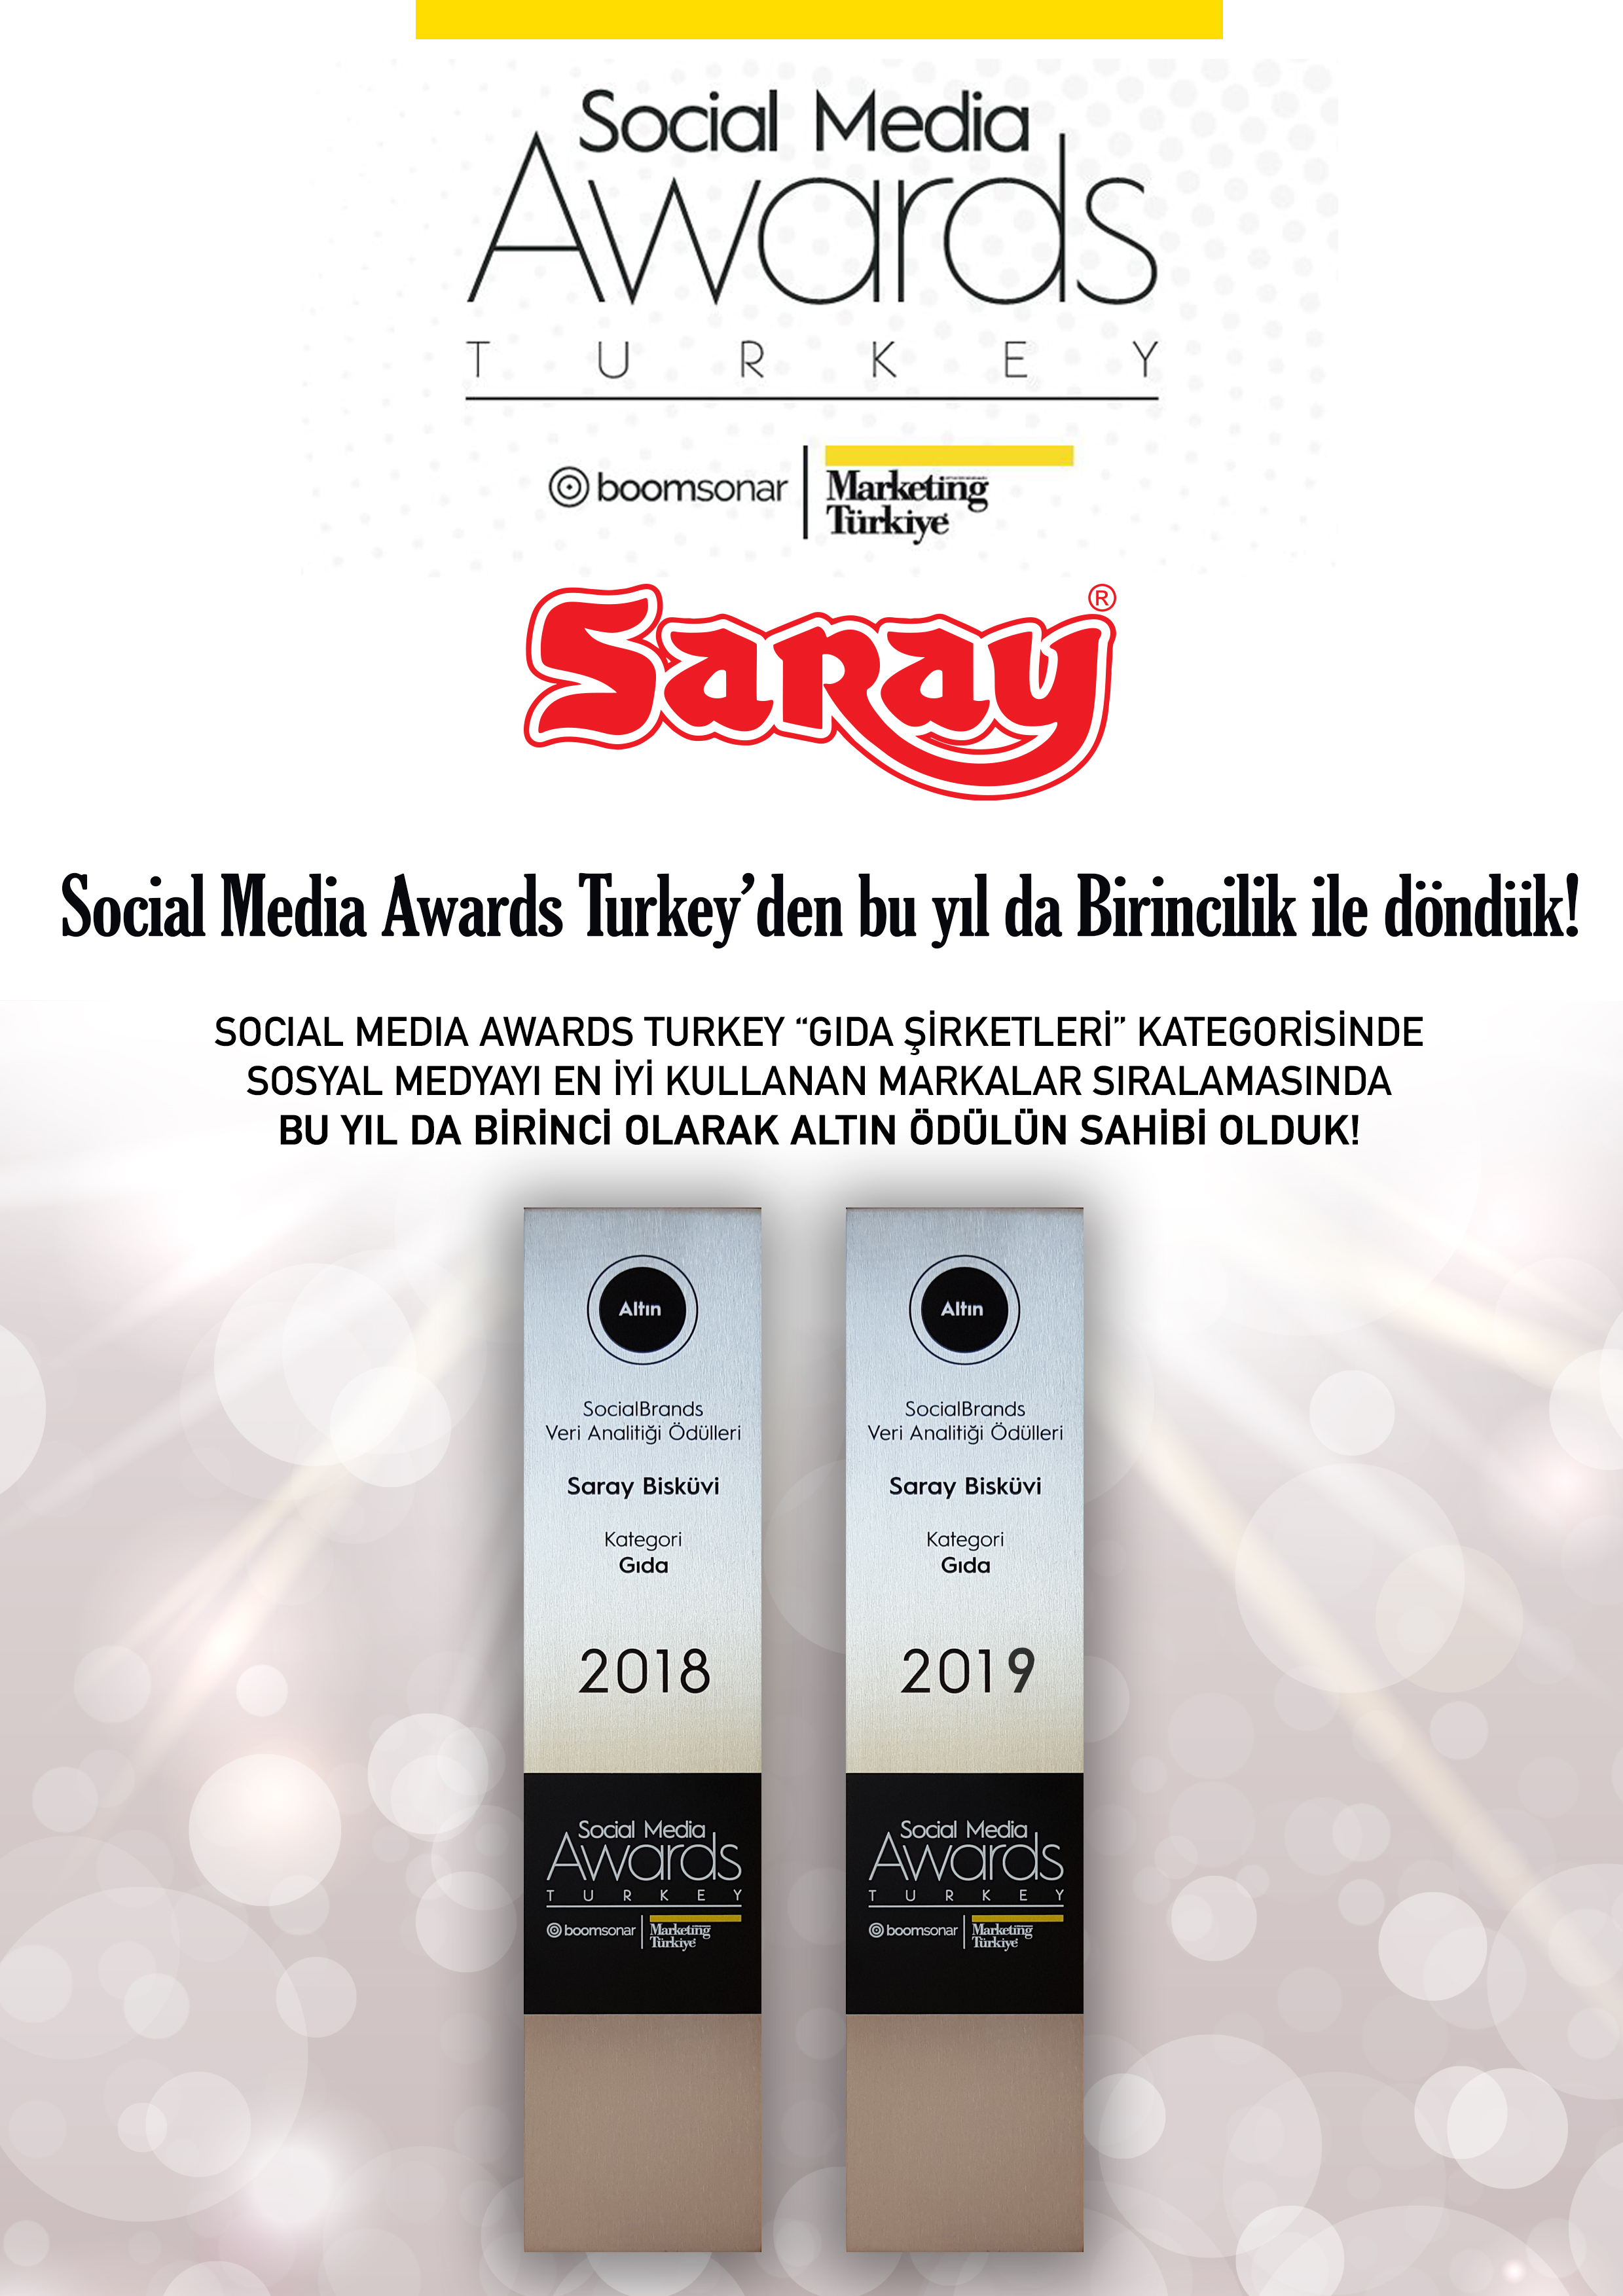 SARAY'DAN BİR BAŞARI DAHA ! -  Social Media Awards Turkey 2019 Ödüllerinde Altın Ödül (Birincilik) Yine Saray Bisküvi'nin